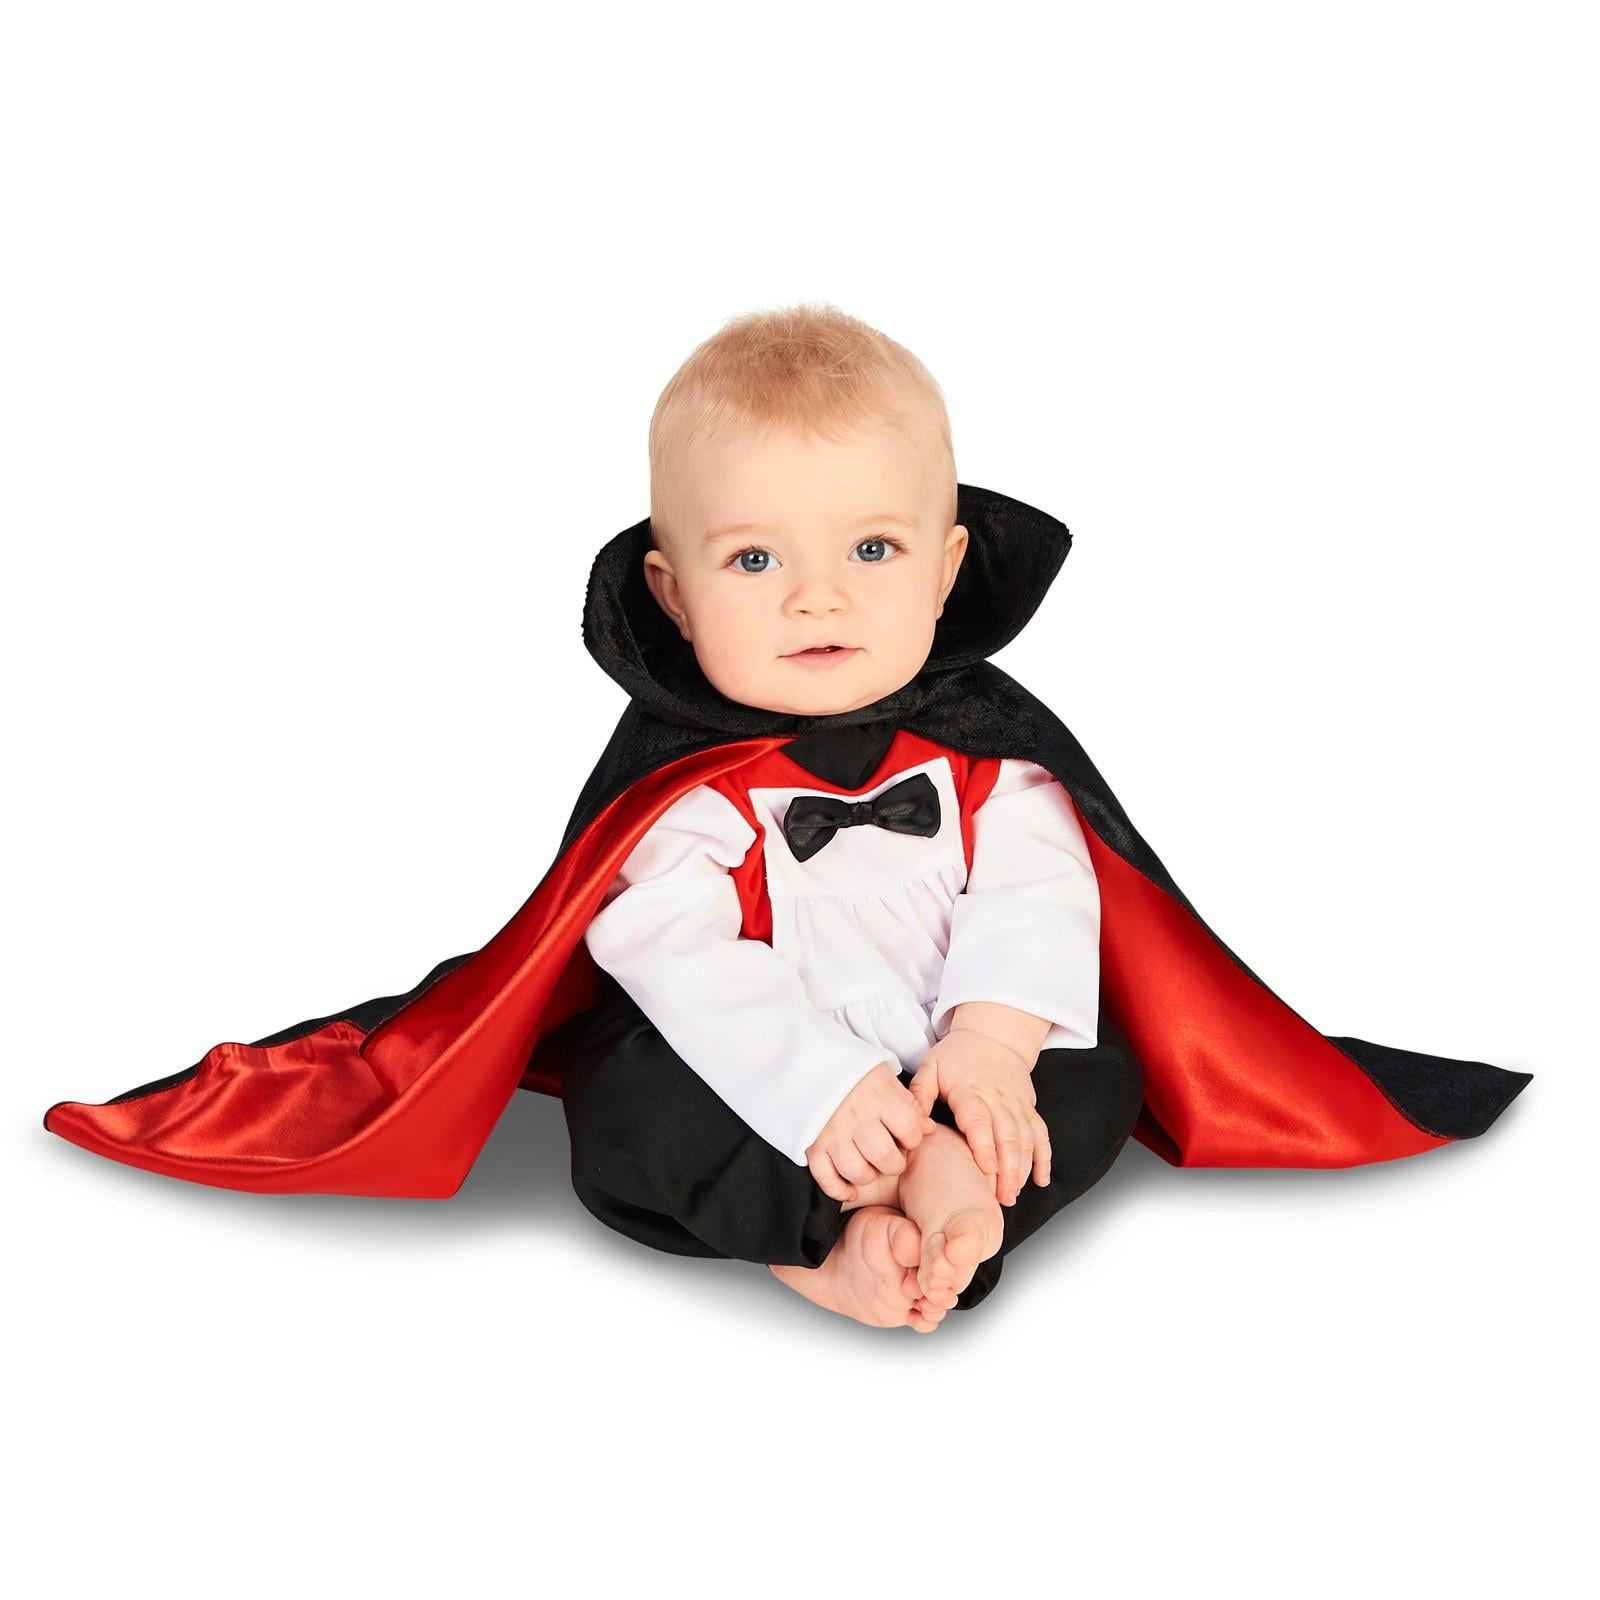 vampire costume baby boy